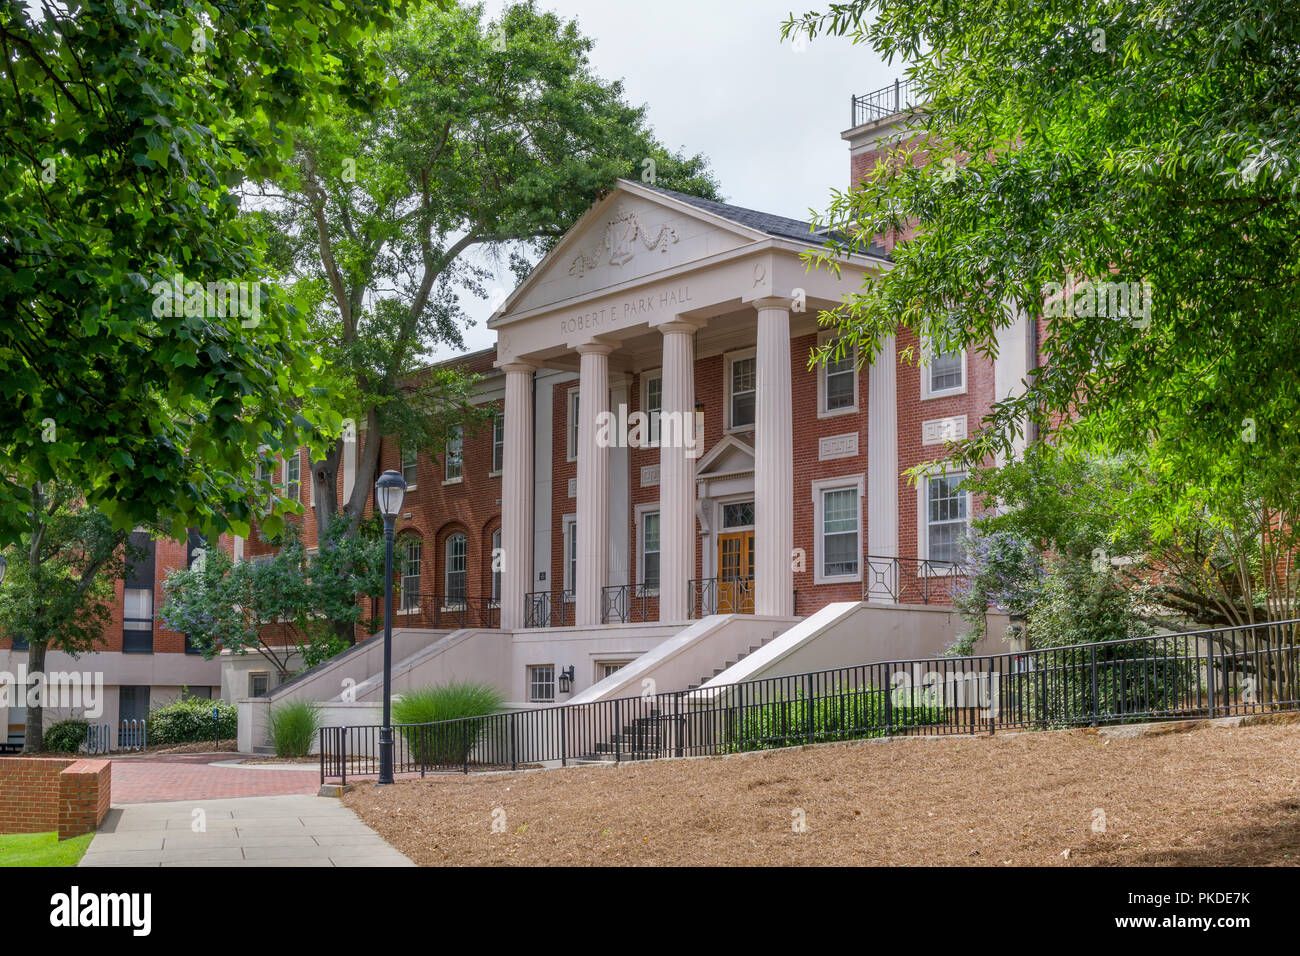 Athen, GA/USA Juni 5, 2018: Robert E. Park Hall auf dem Campus der Universität von South Carolina. Stockfoto